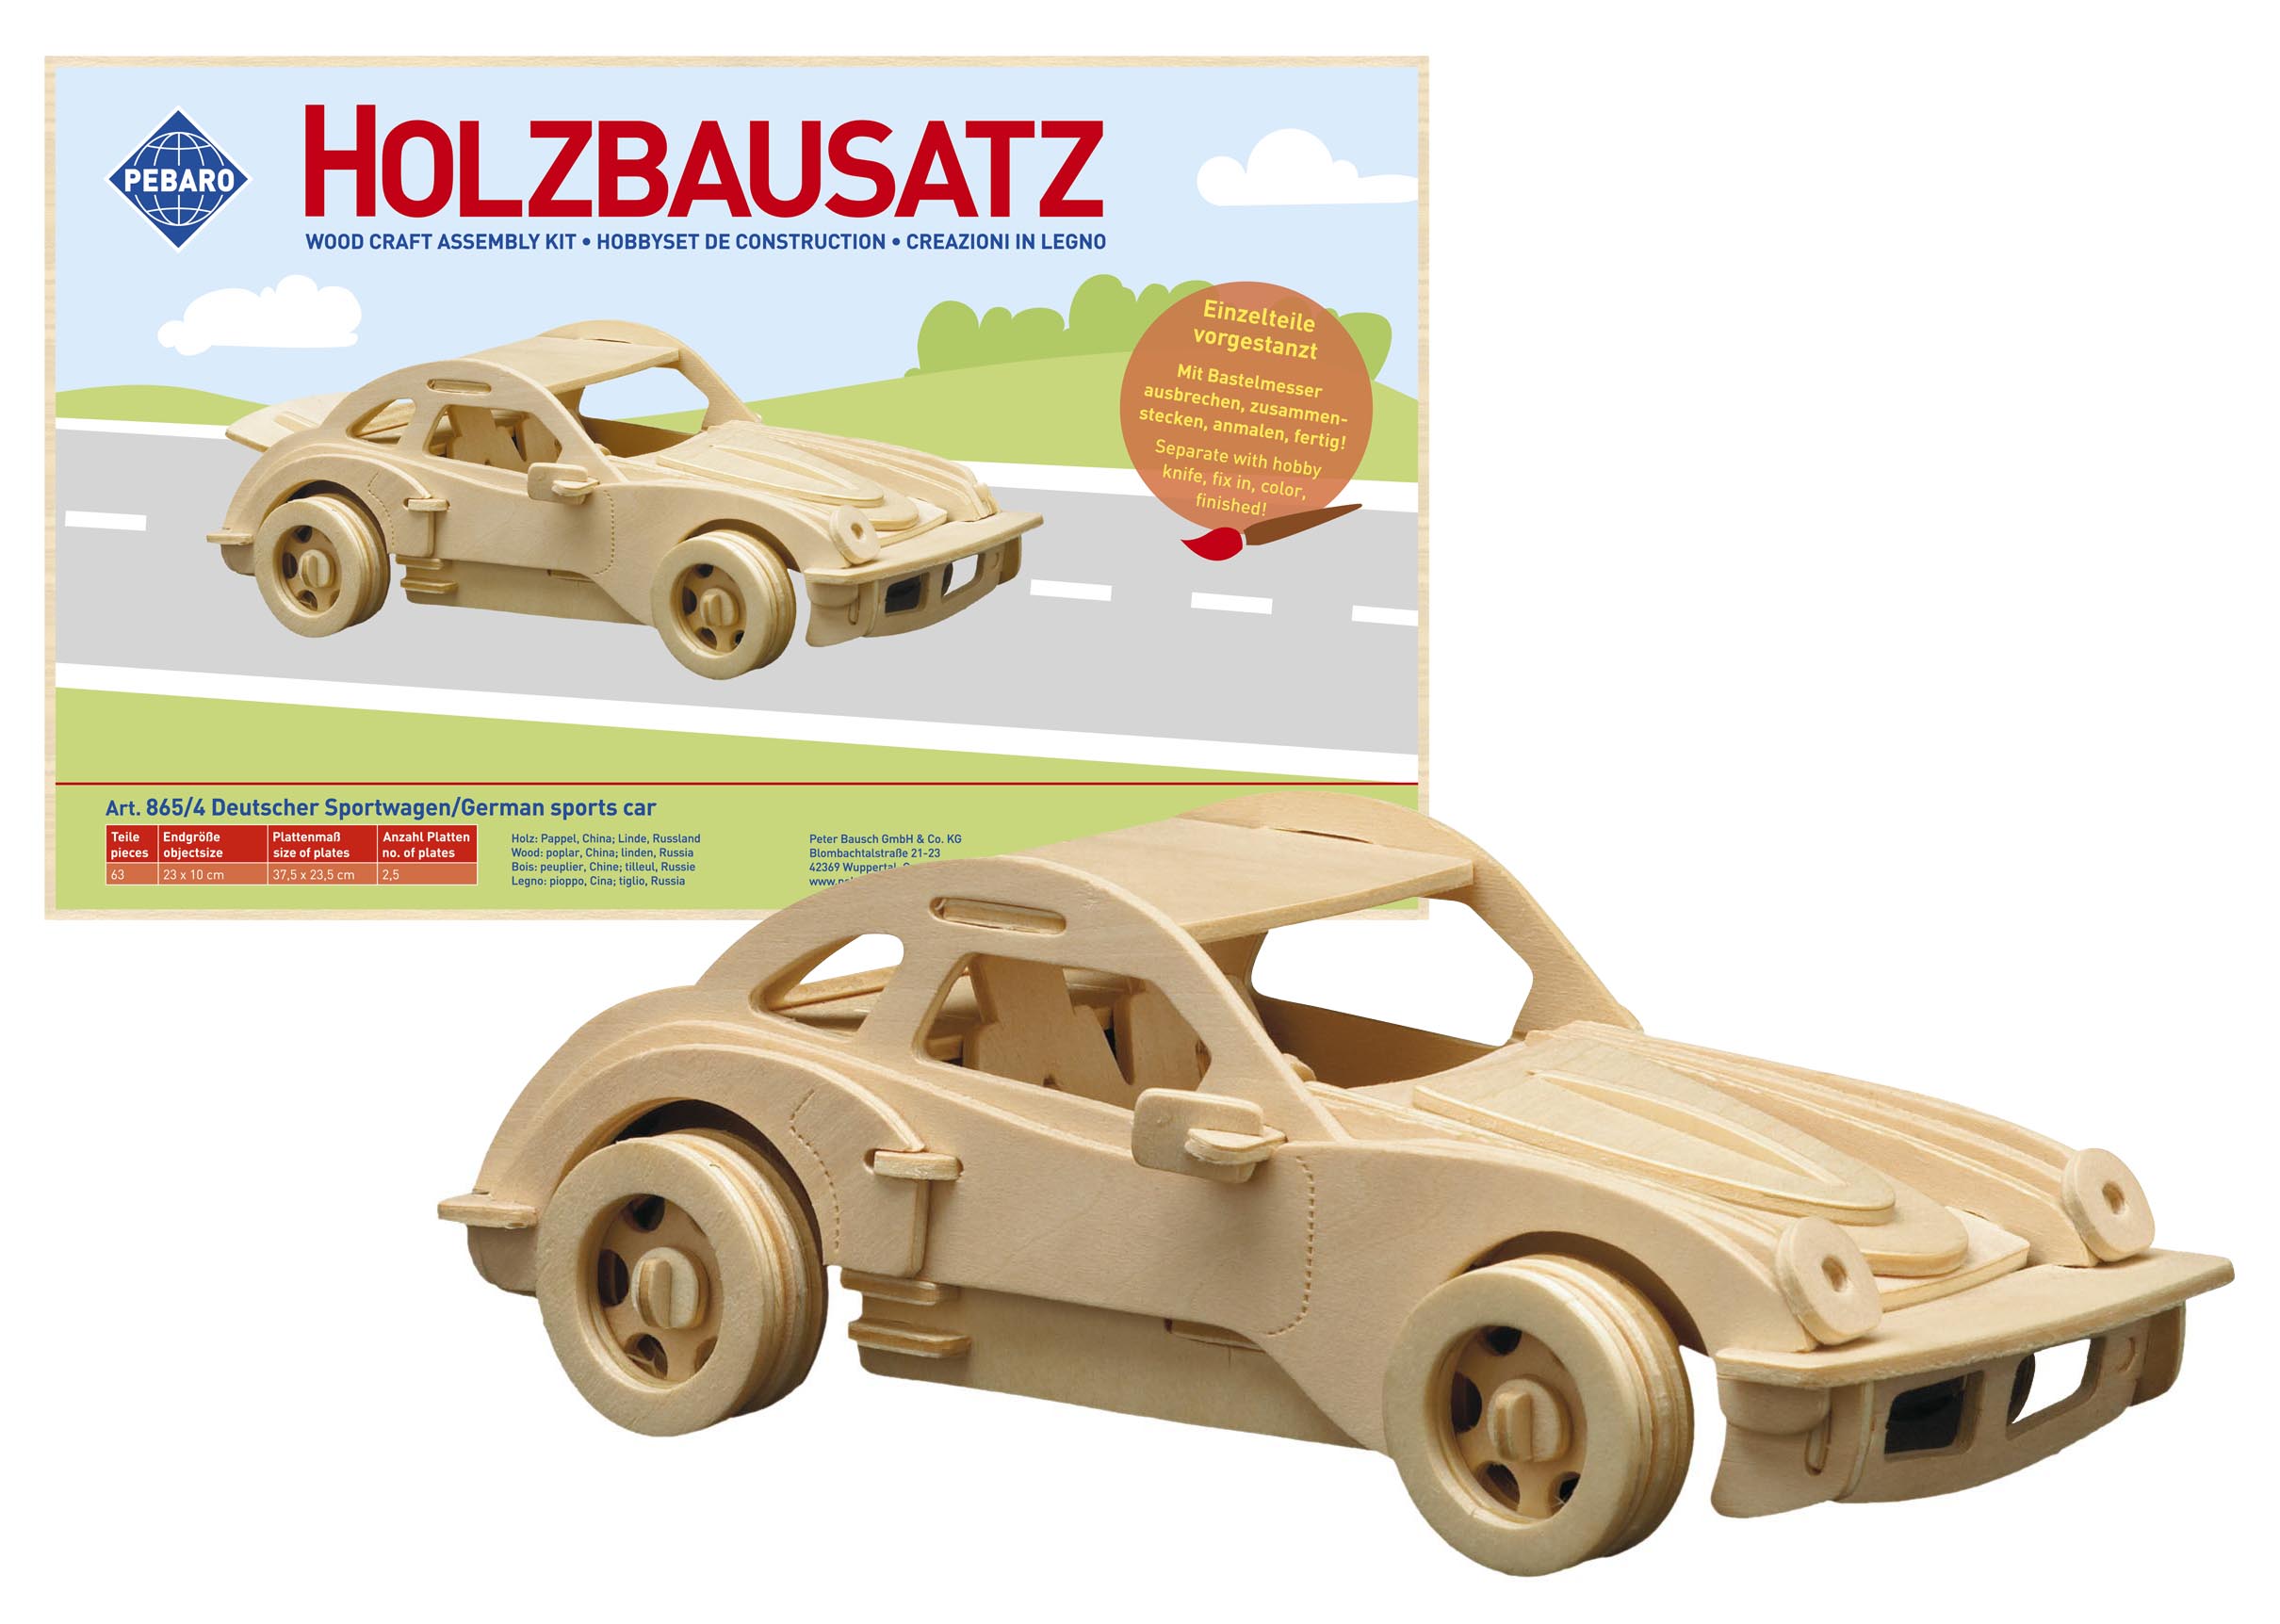 Der deutsche Sportwagen besteht aus Holz und kann individuell angemalt werden.